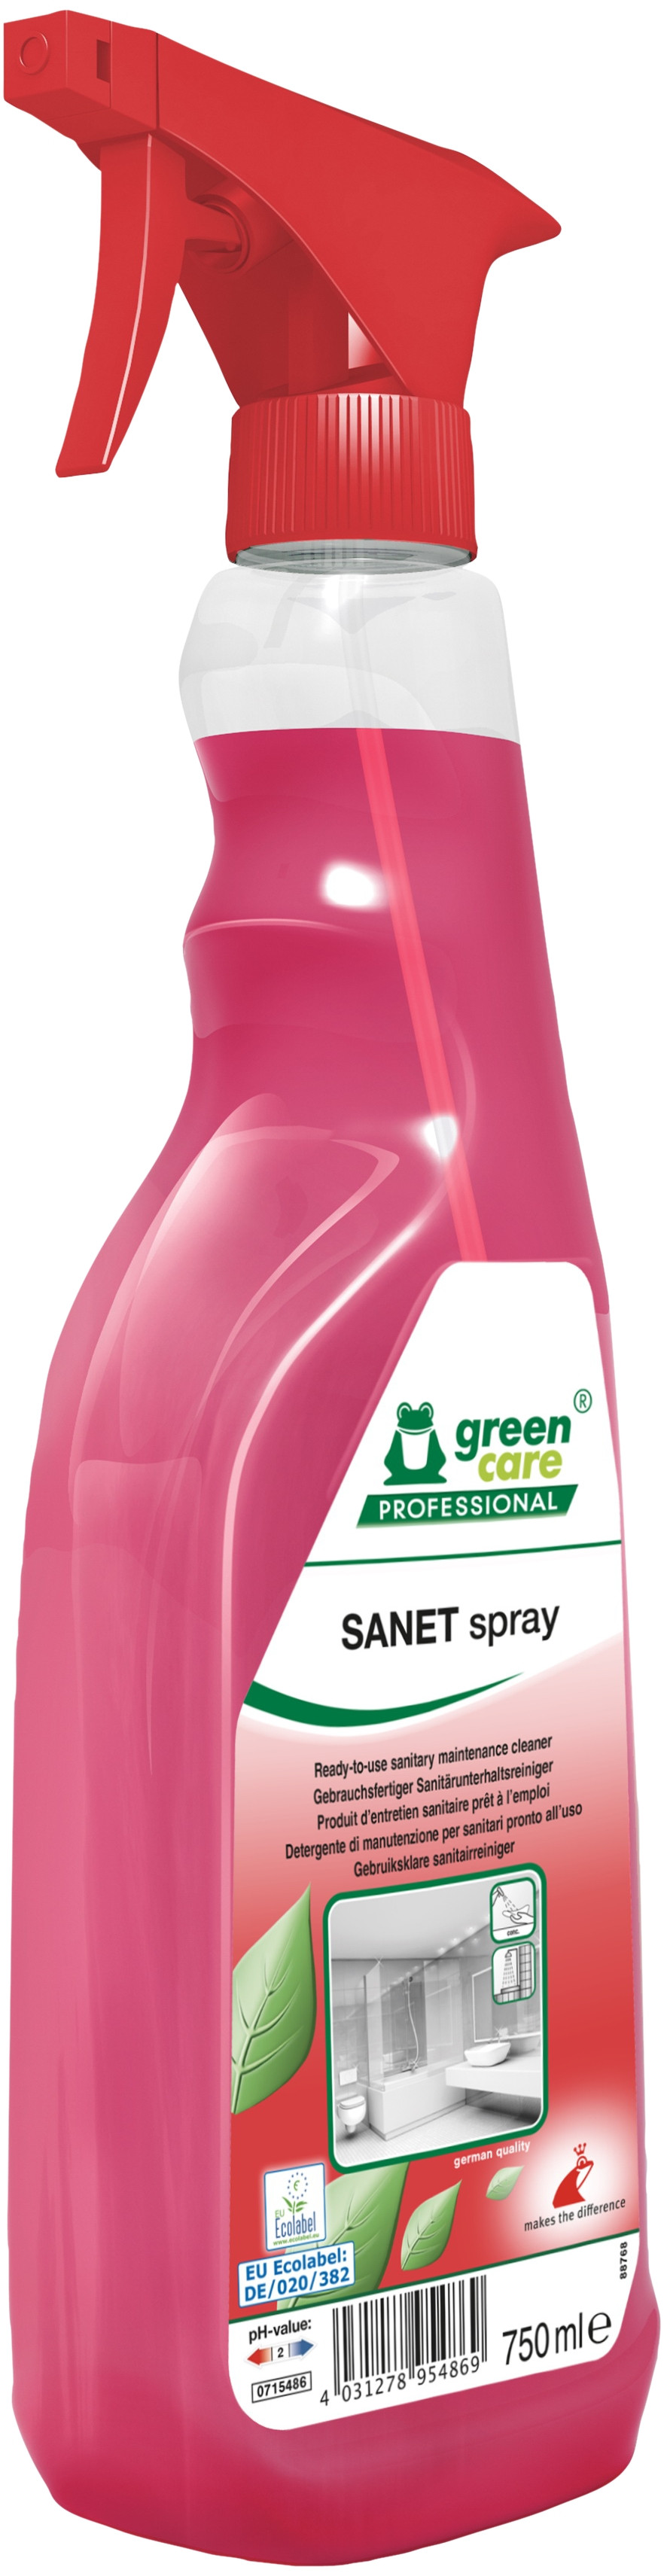 Green Care Sanet Spray 750 ml 10 stk Sur/afkalkende med farve og parfume